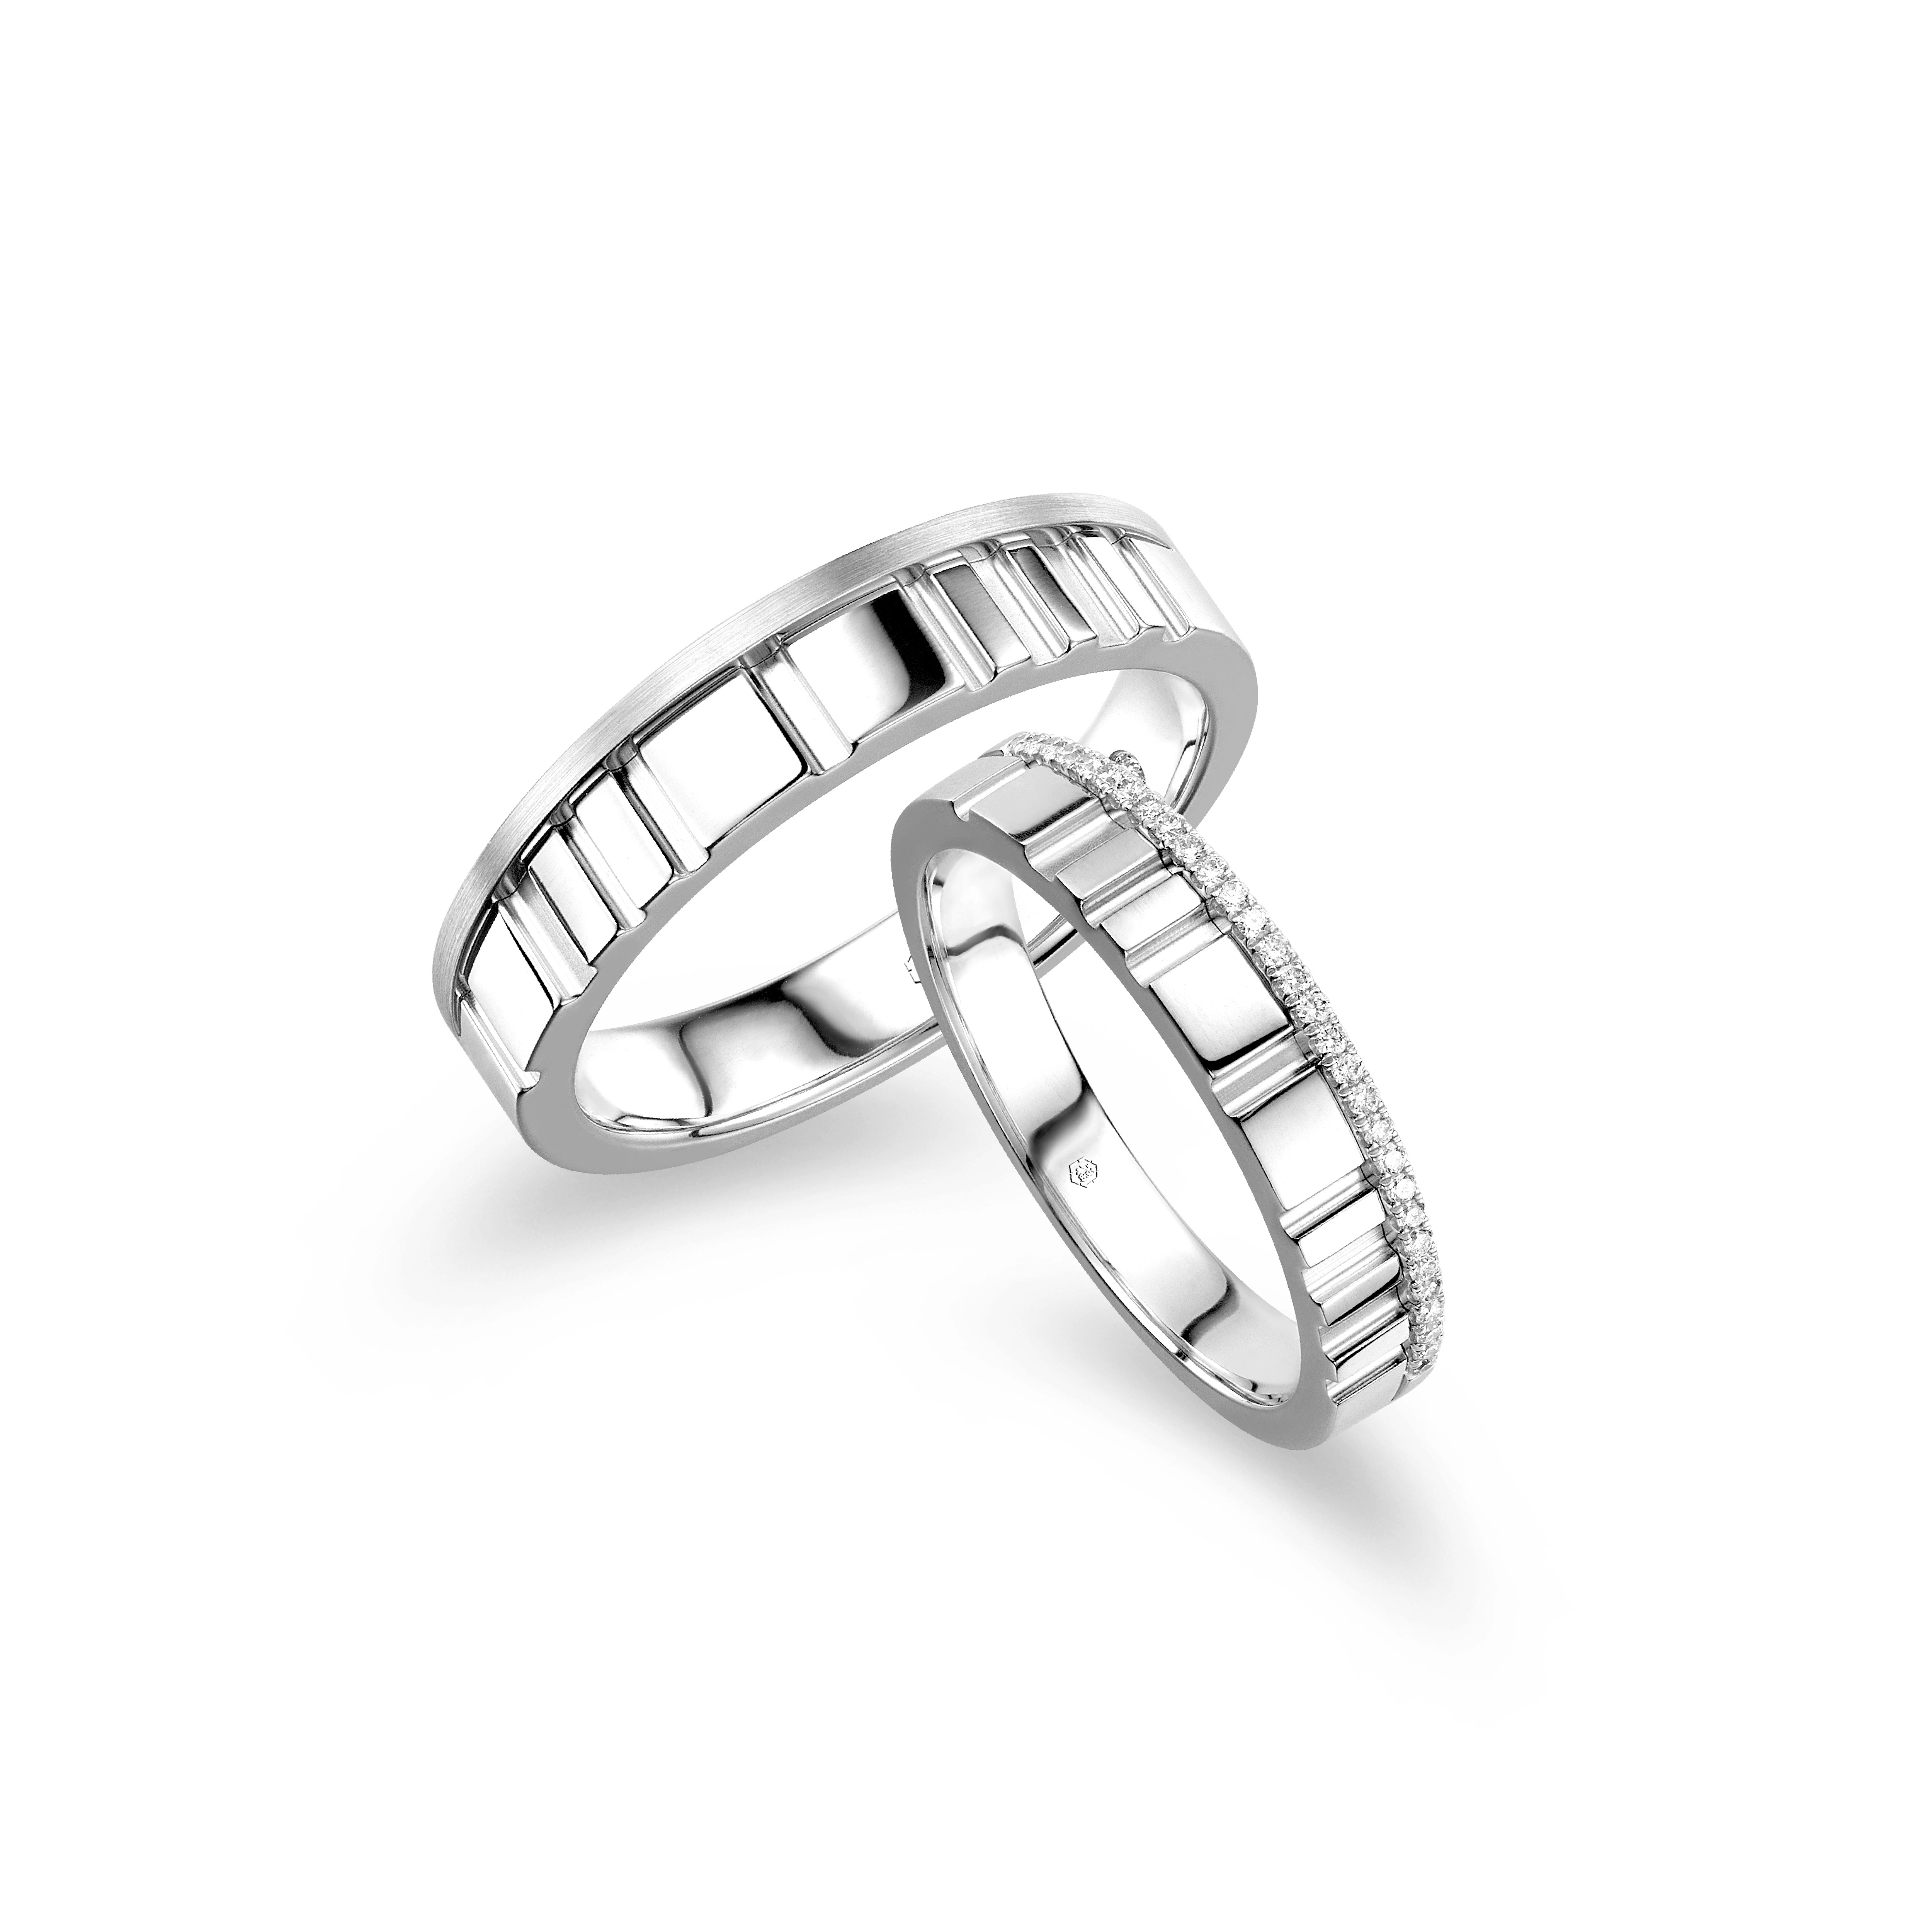 愛恆久系列18K金(白色)鑽石情侶戒指